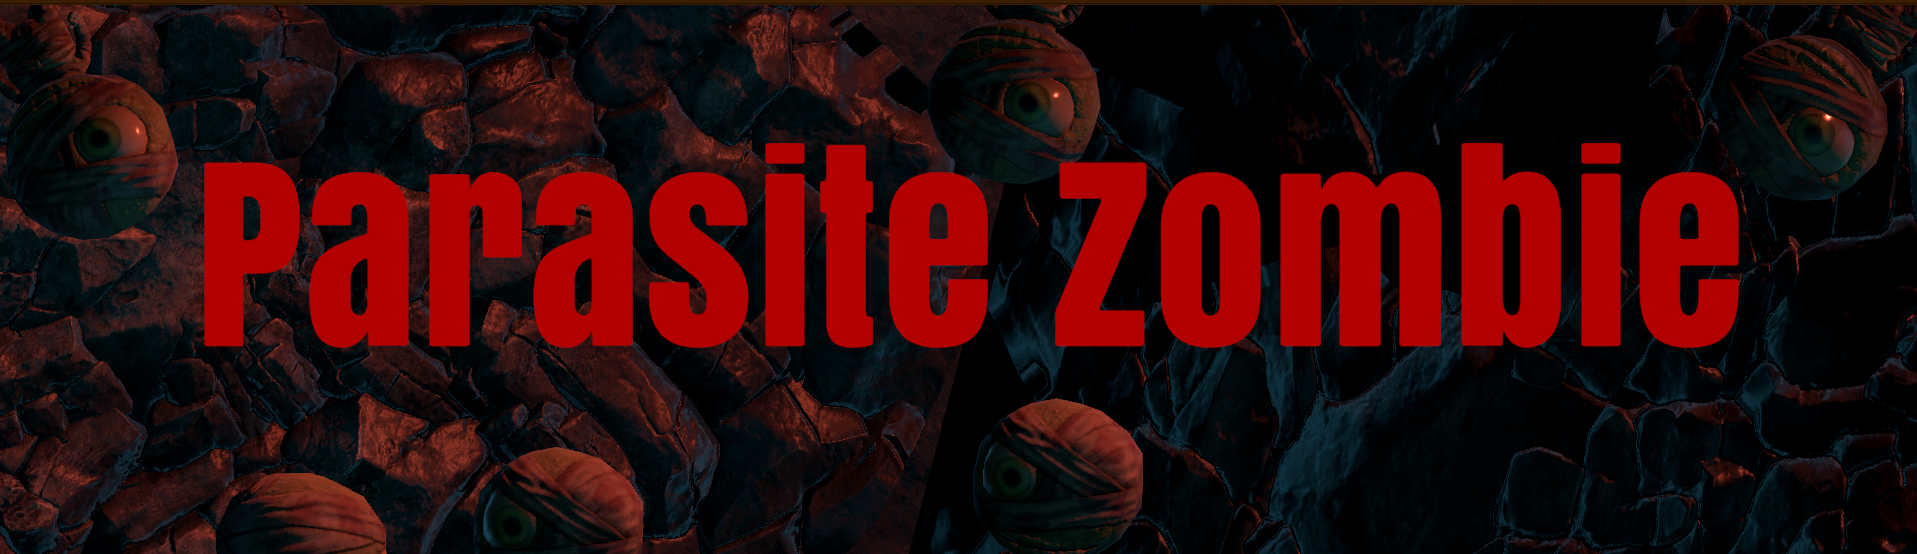 Parasite Zombie